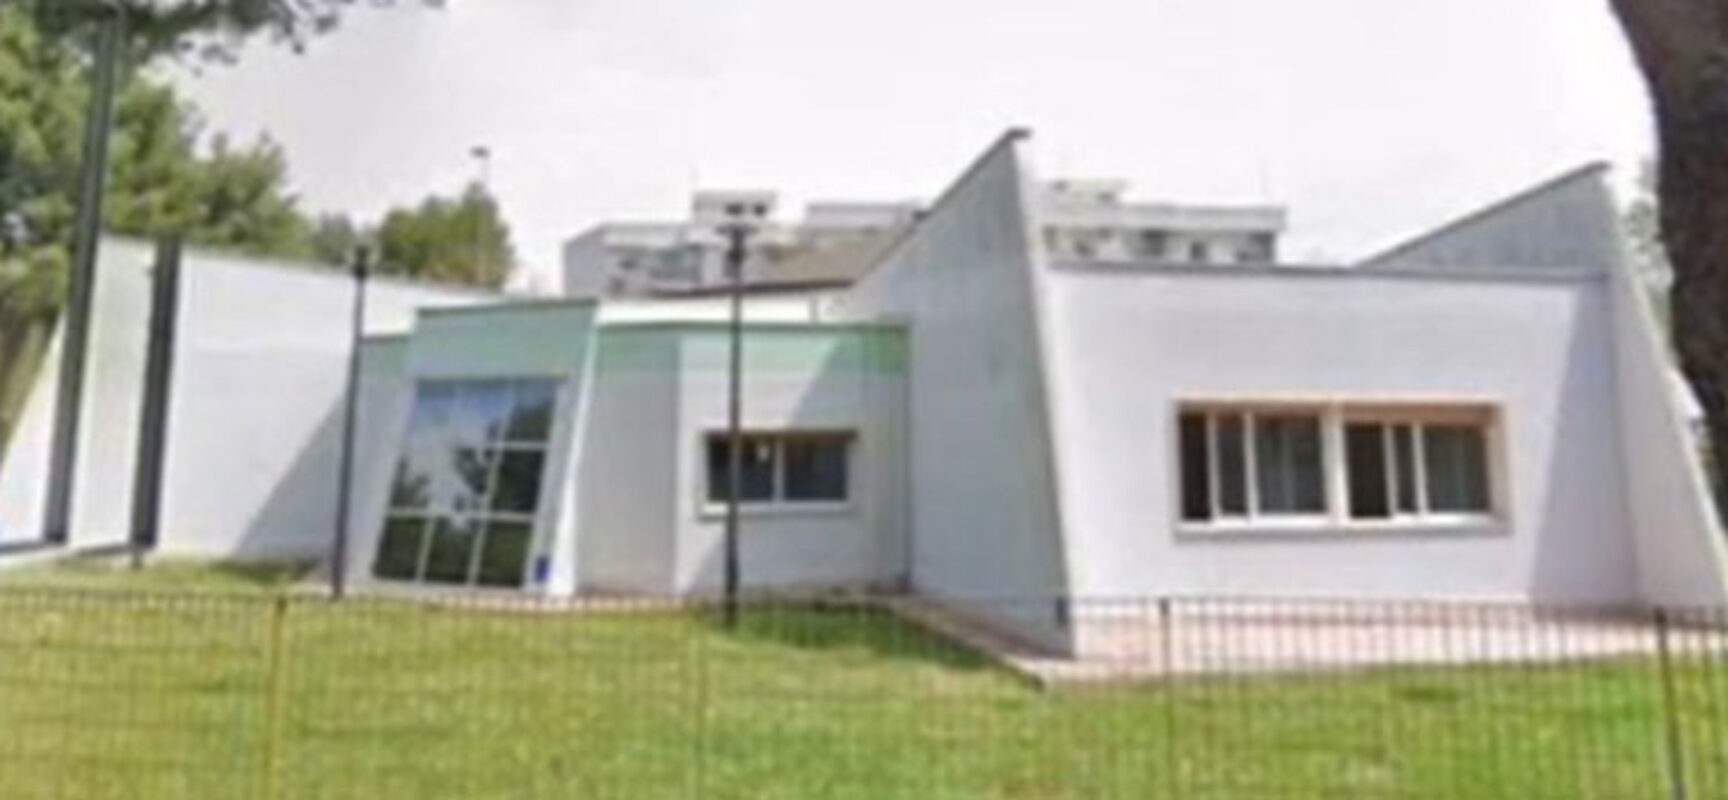 Spina: “La Svolta di Angarano e Silvestris chiude anche l’asilo nido comunale Montessori”